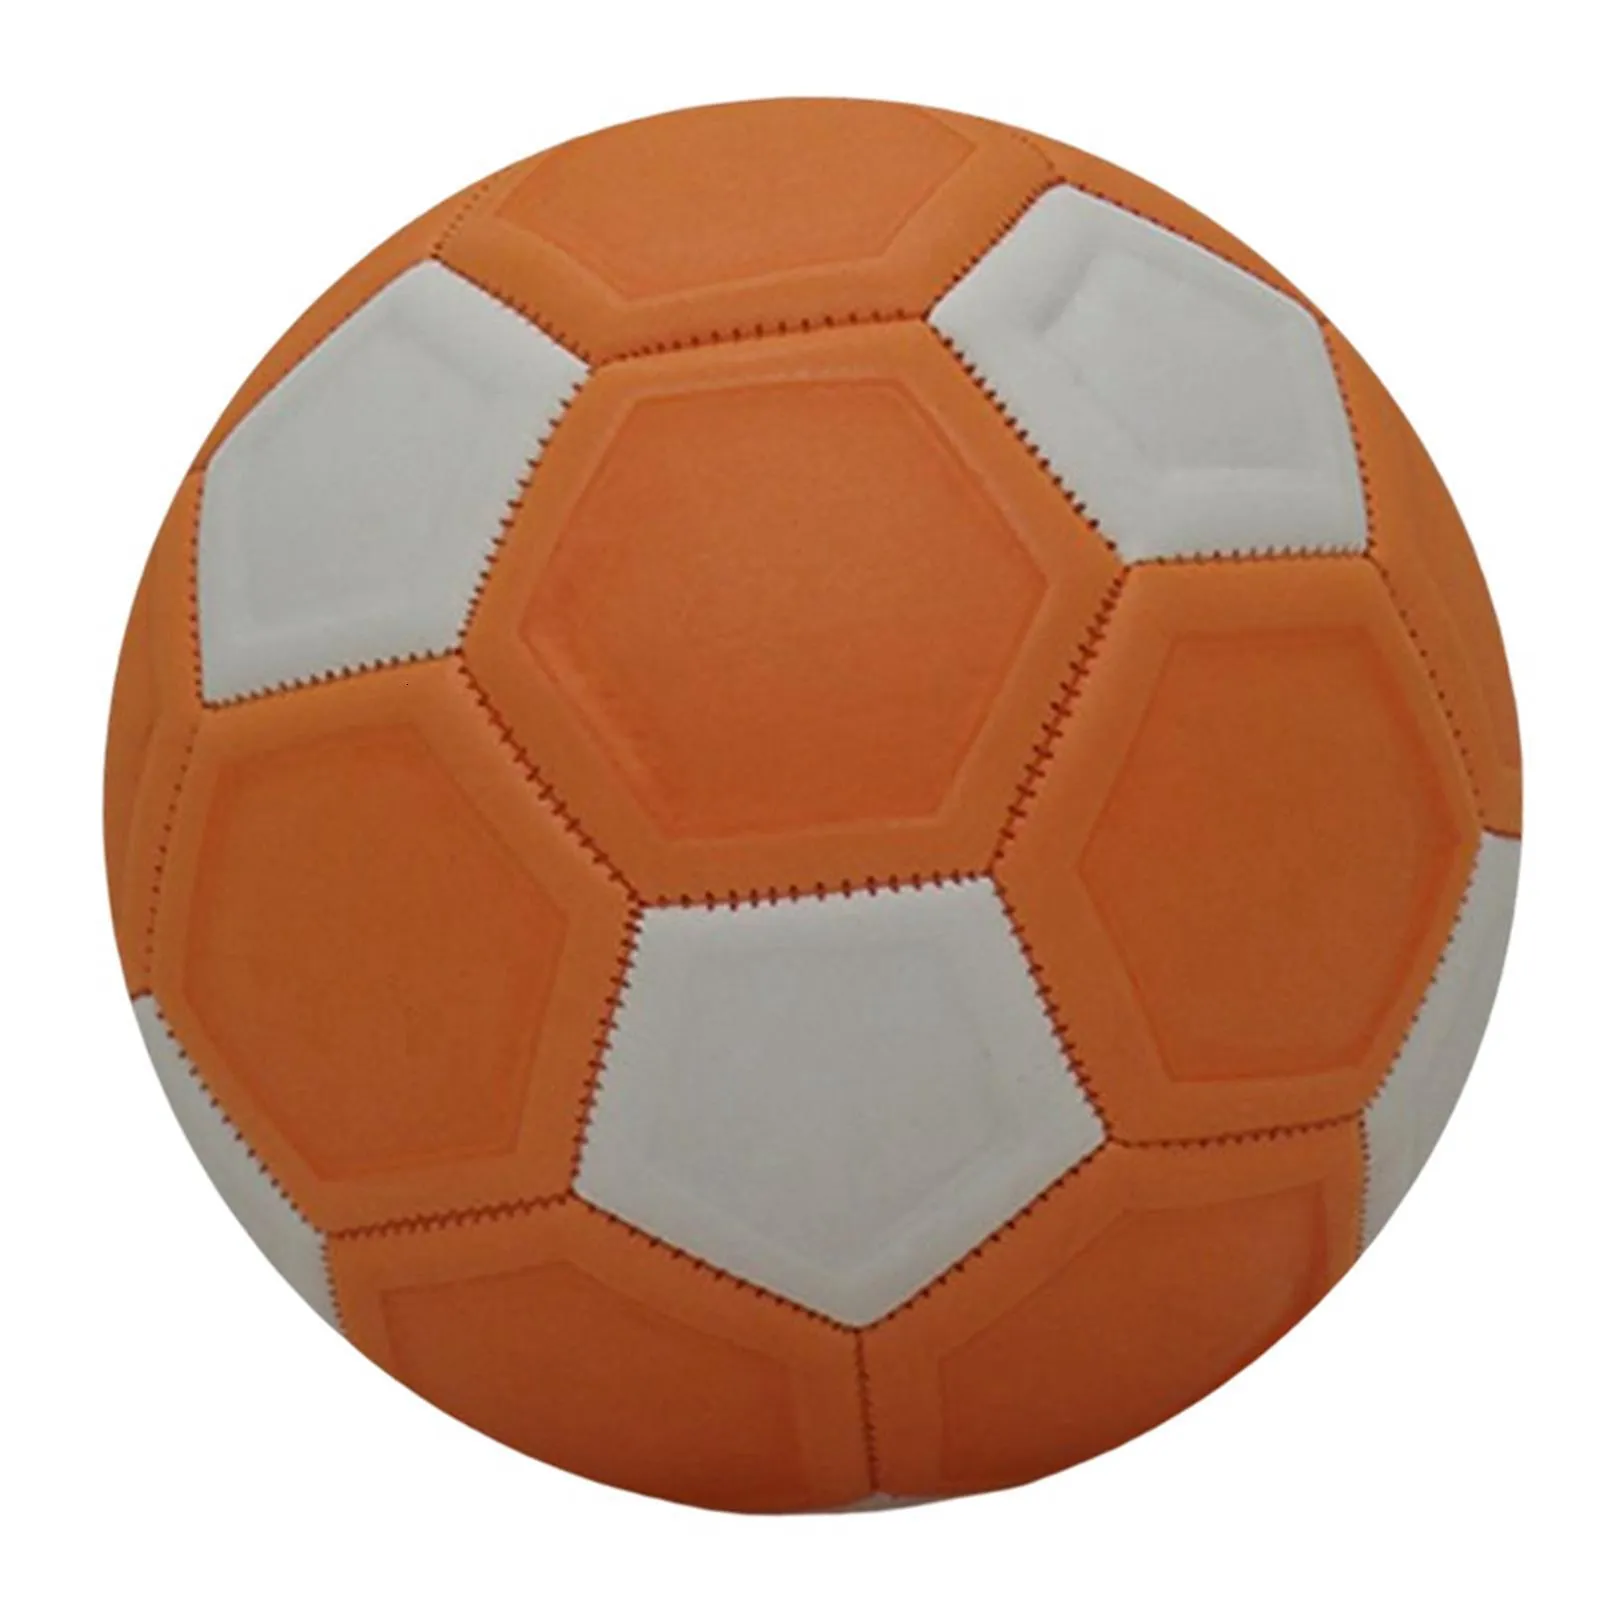 Мячи Футбольный мяч, размер 4, тренировочный мини-футбол для девочек и мальчиков 5, 6, 7, 8, 9, 10, 11, 12, 13 лет 230627